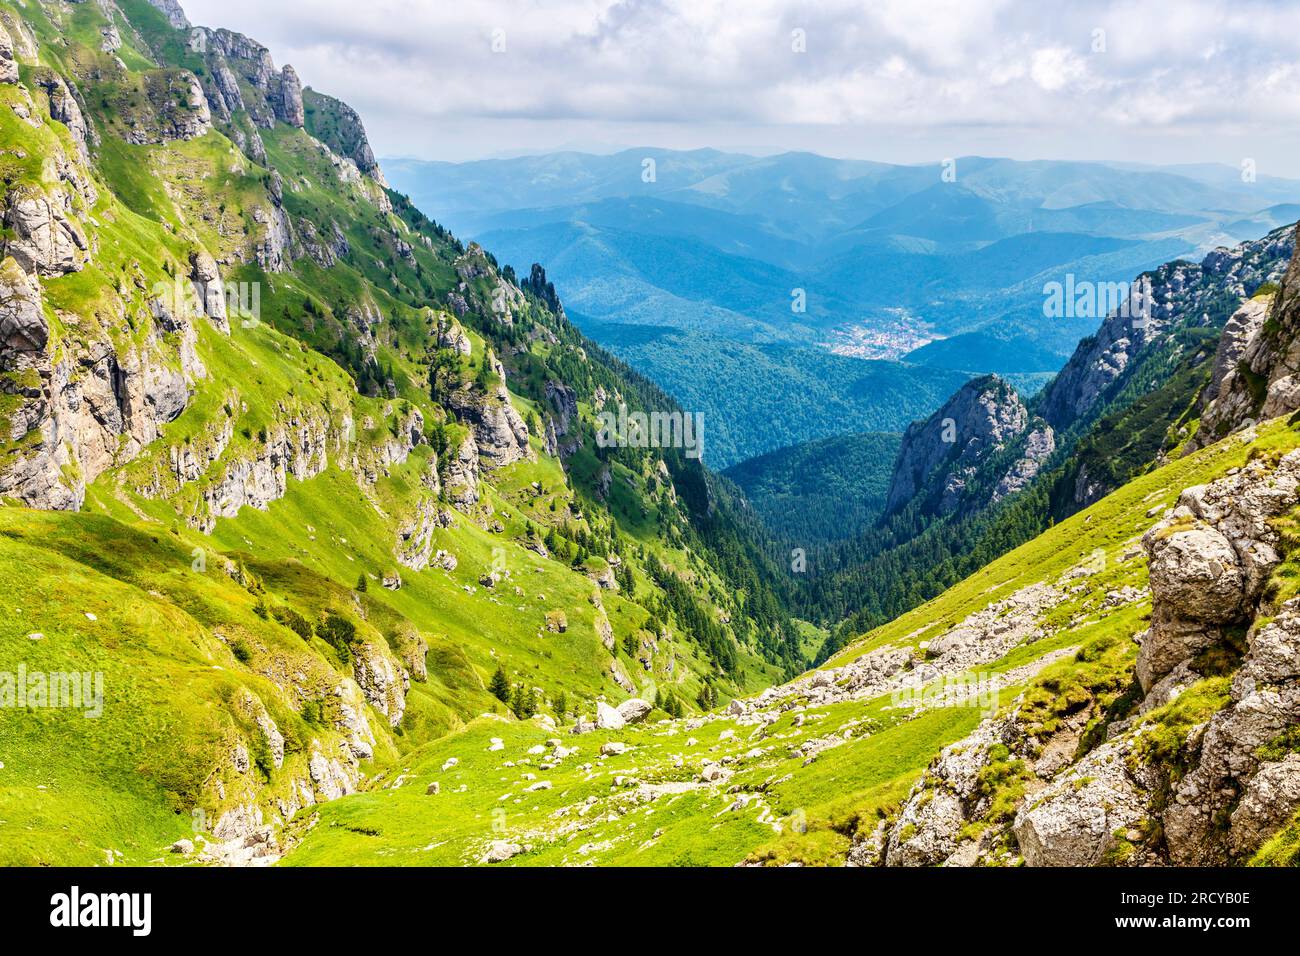 Sentier d'alpinisme de Busteni au pic OMU en passant par la vallée de Râul Valea Priponului, montagnes Bucegi, Roumanie Banque D'Images